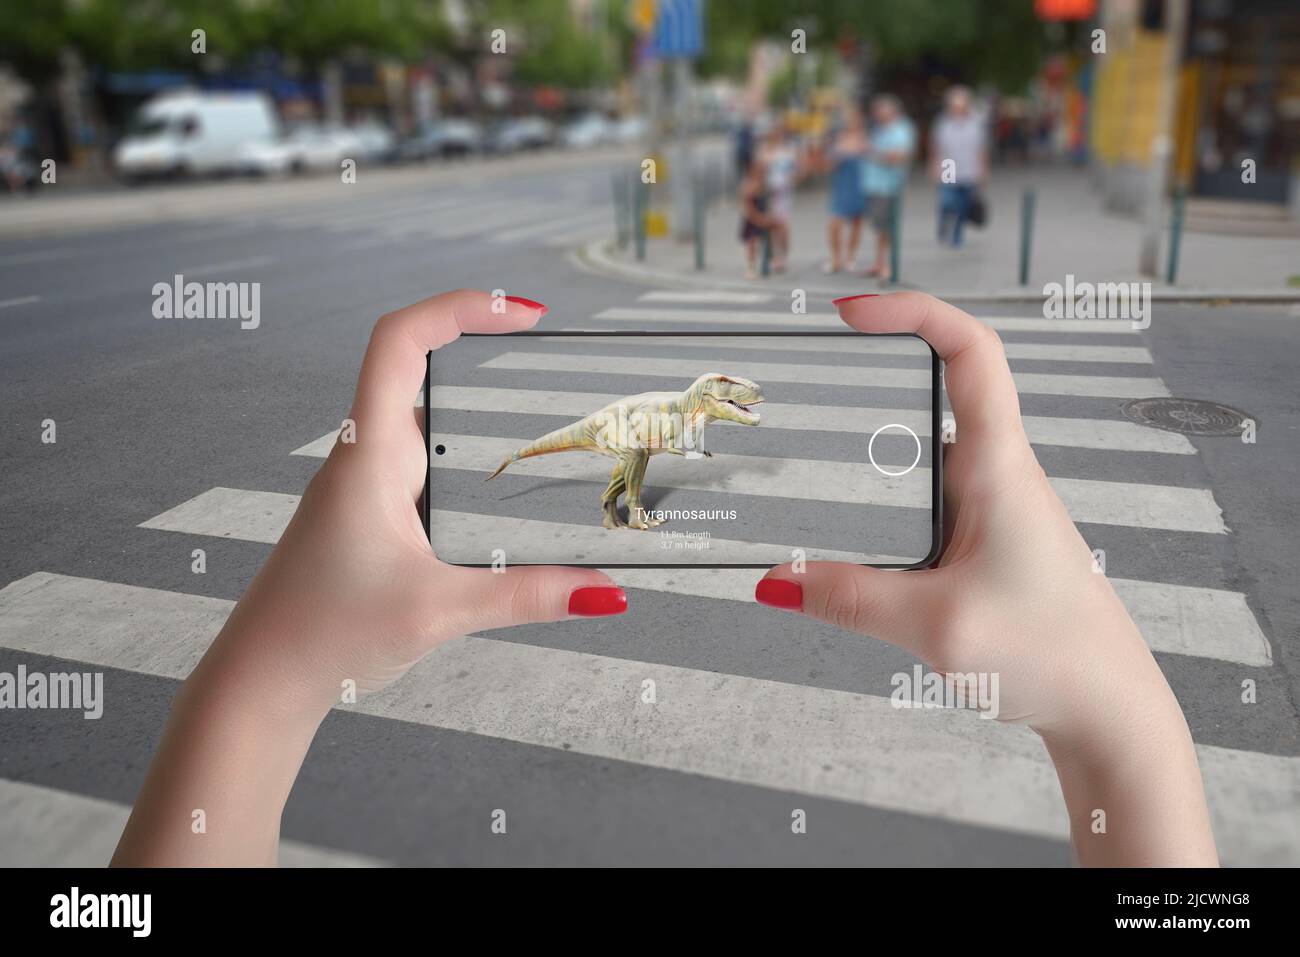 proyección de dinosaurios en la calle en 3d con un teléfono inteligente y un concepto de tecnología de realidad aumentada Foto de stock